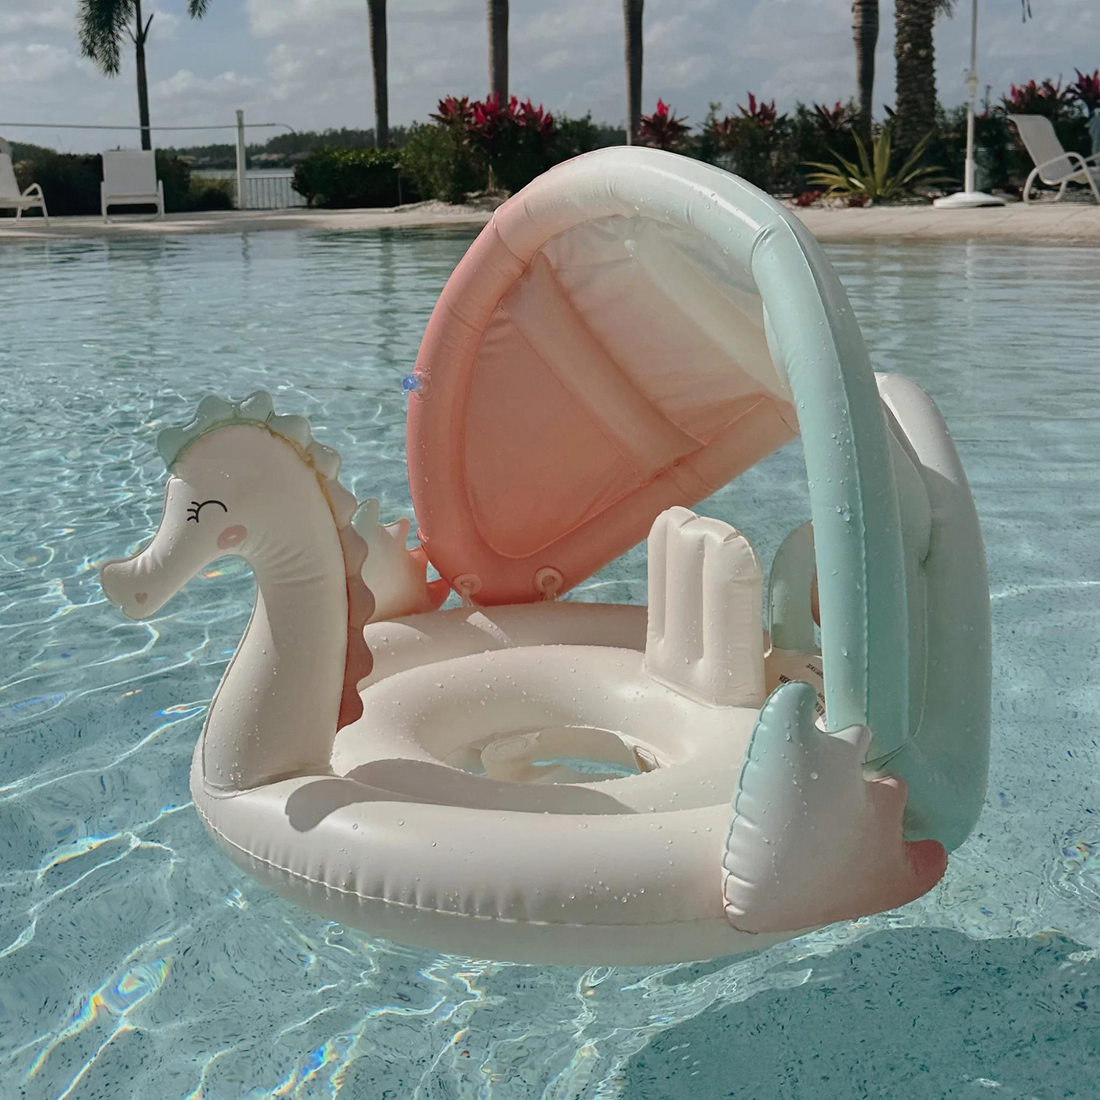 Kūdikių plaukimo ratas - Mermaid Multi